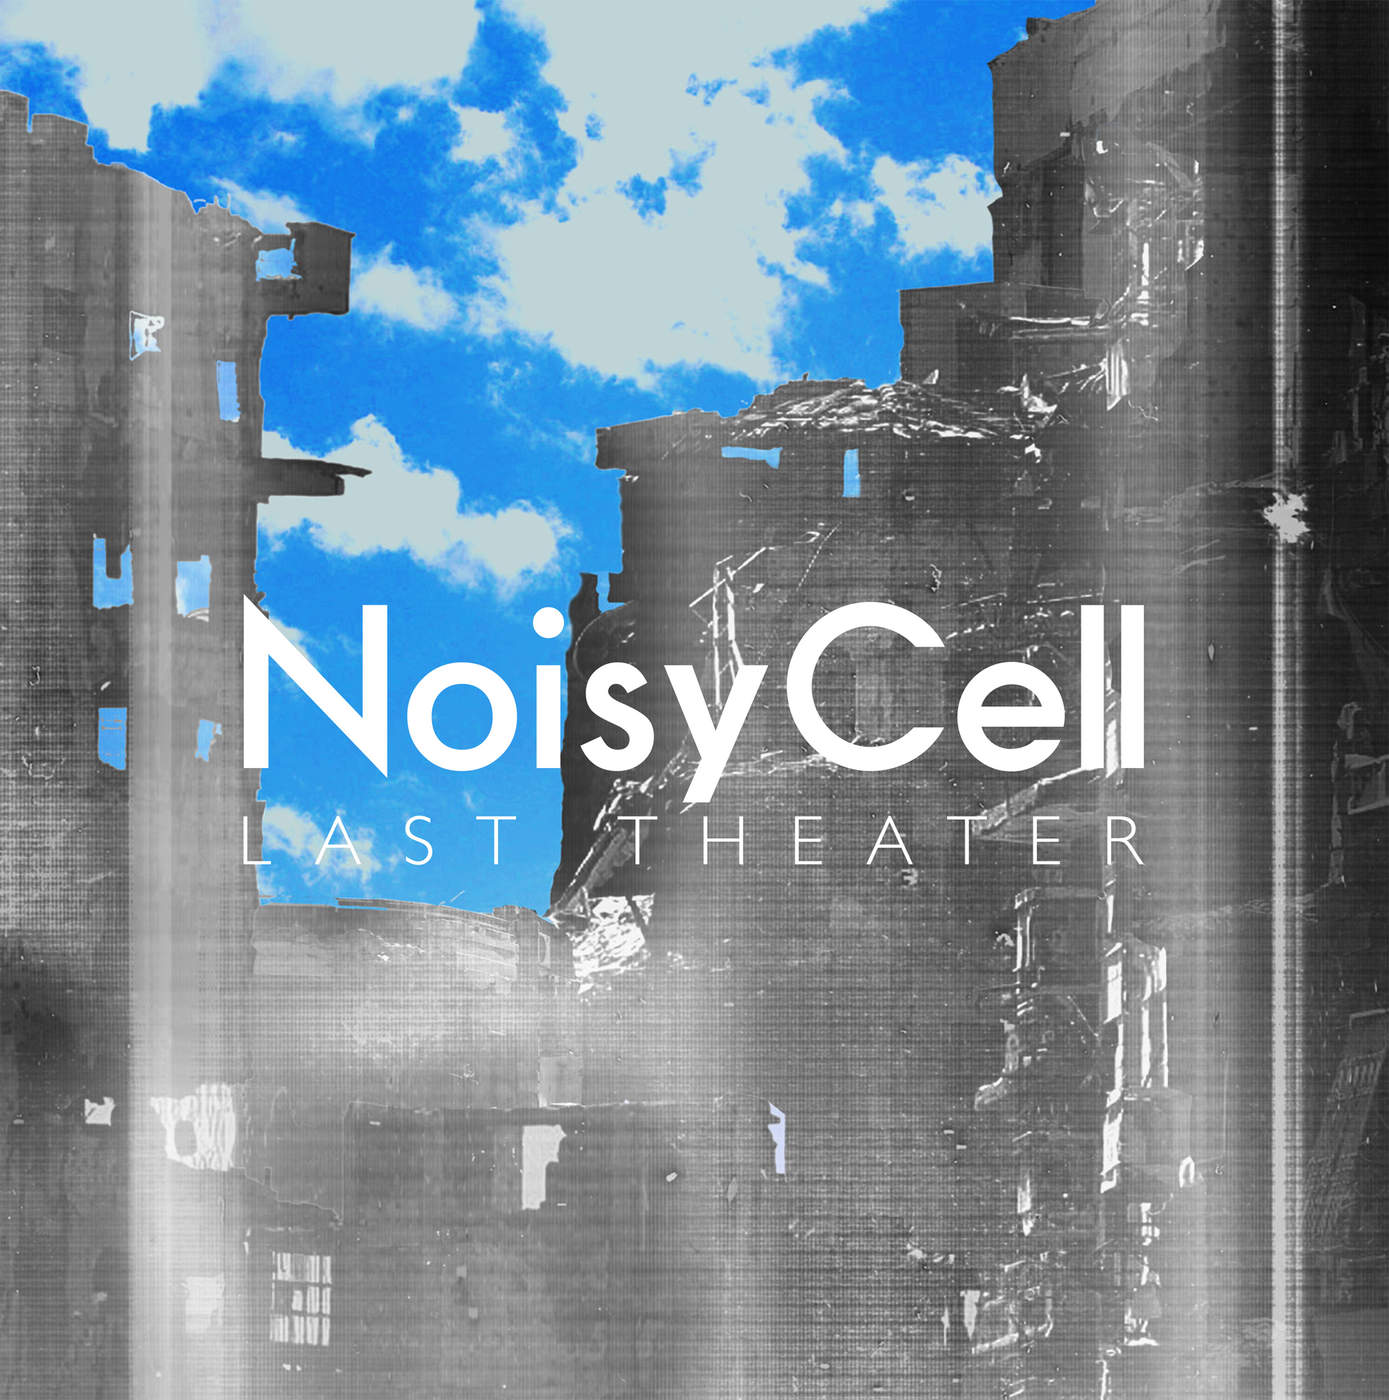 Noisycell - Last Theater